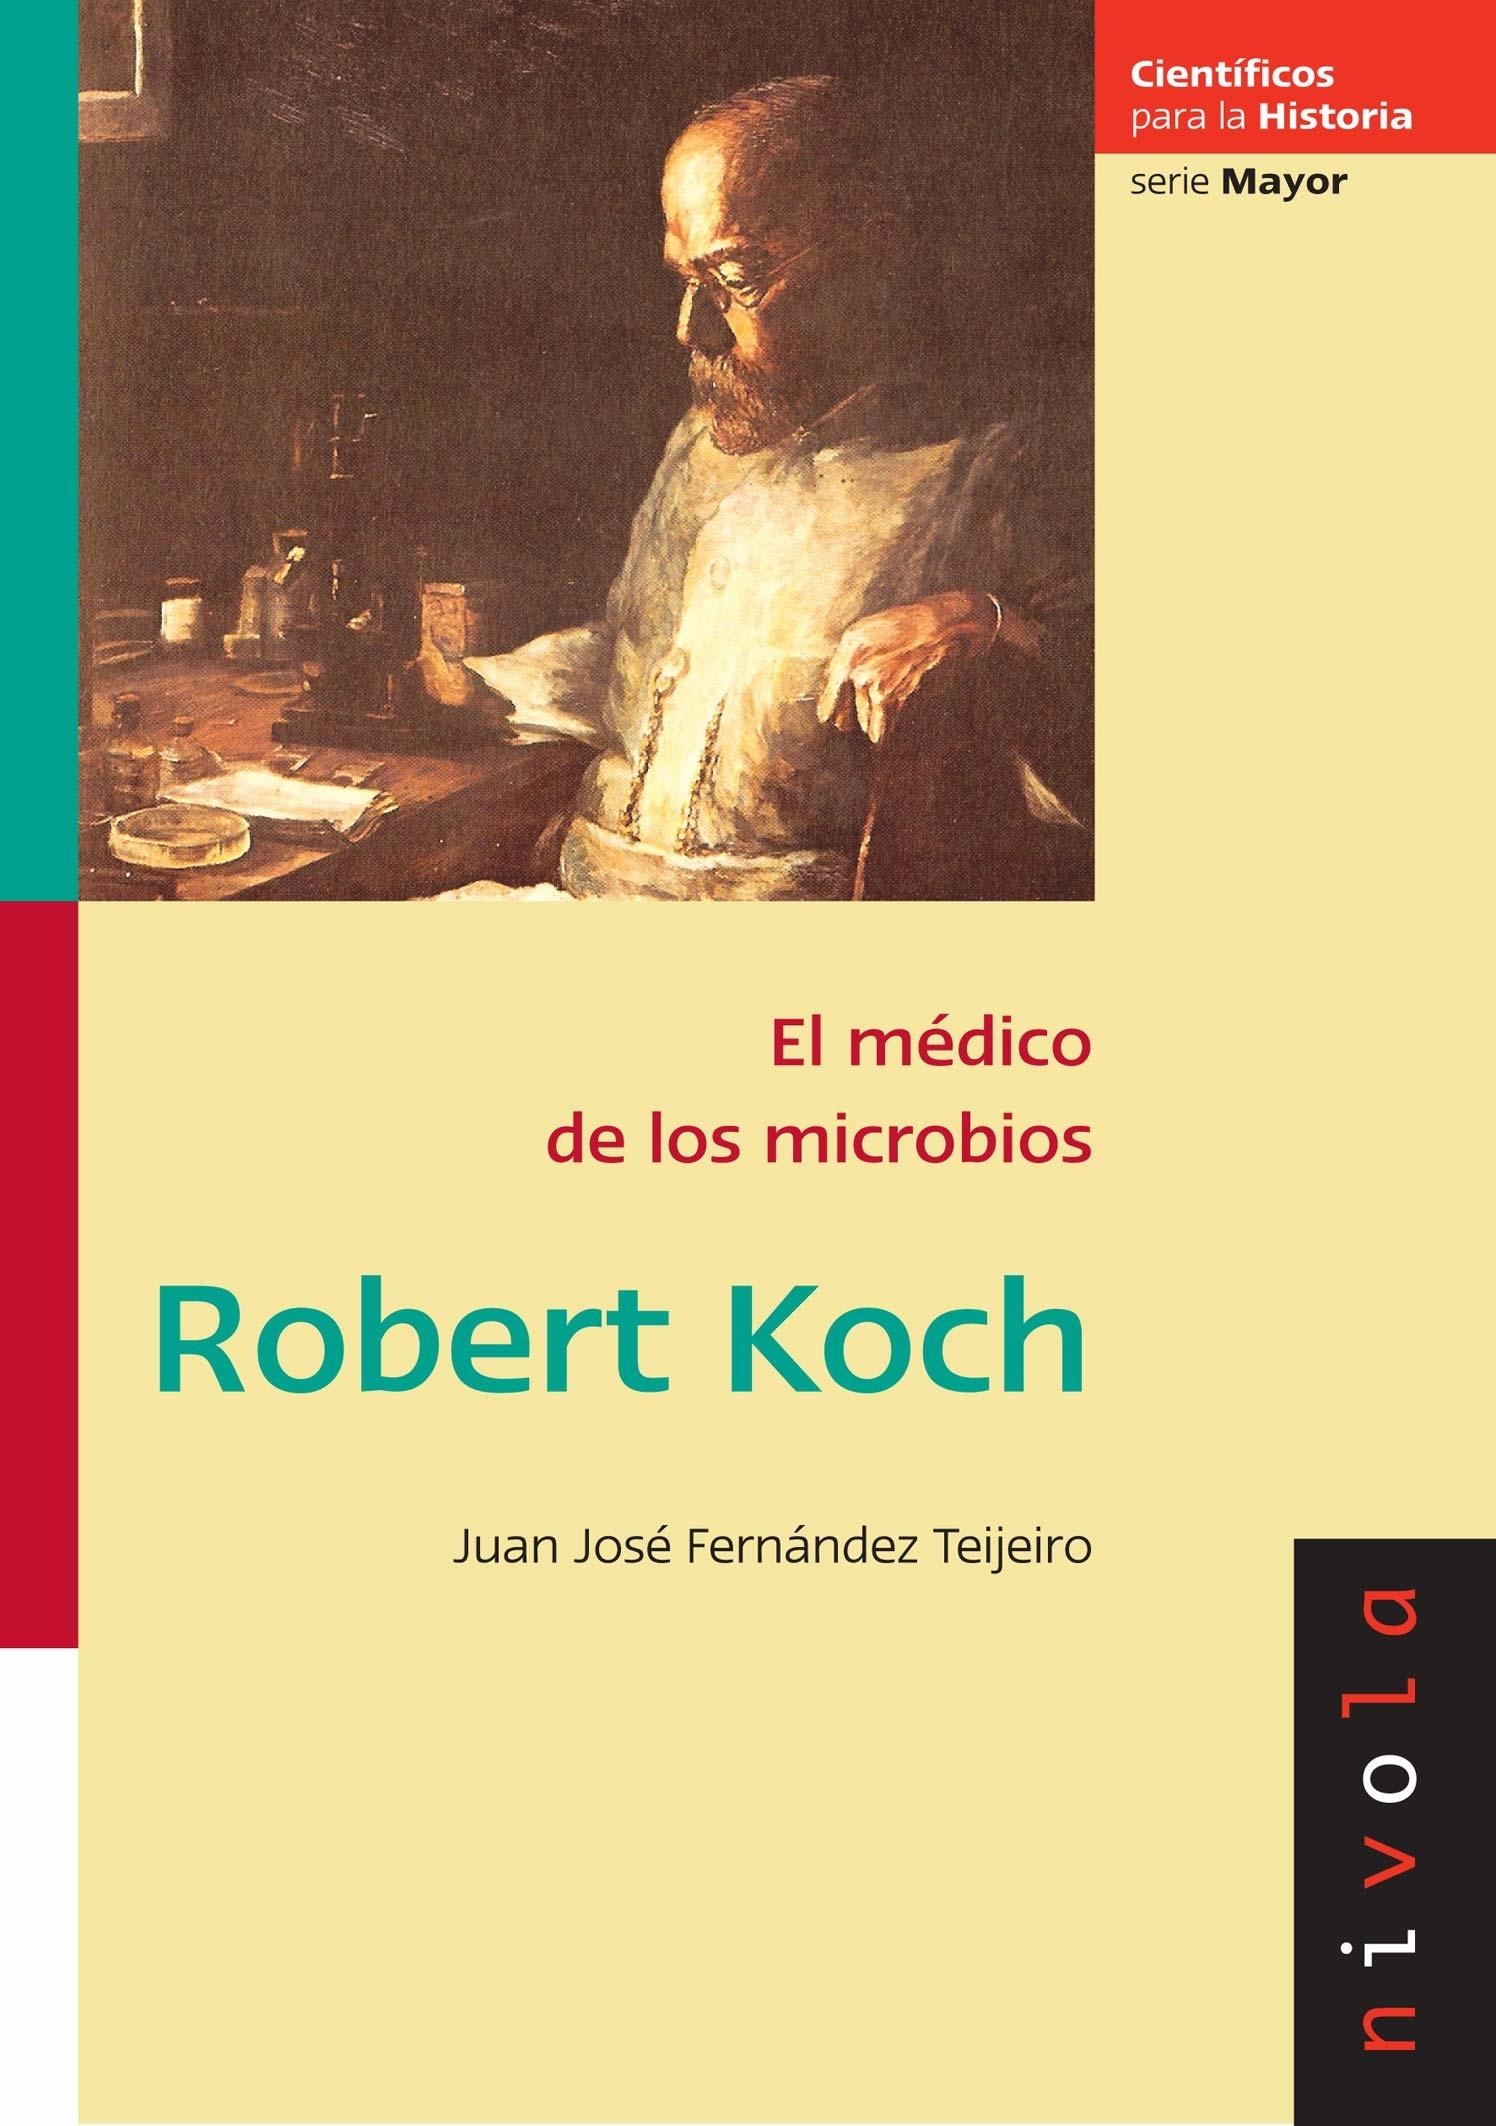 Robert Koch "El médico de los microbios"